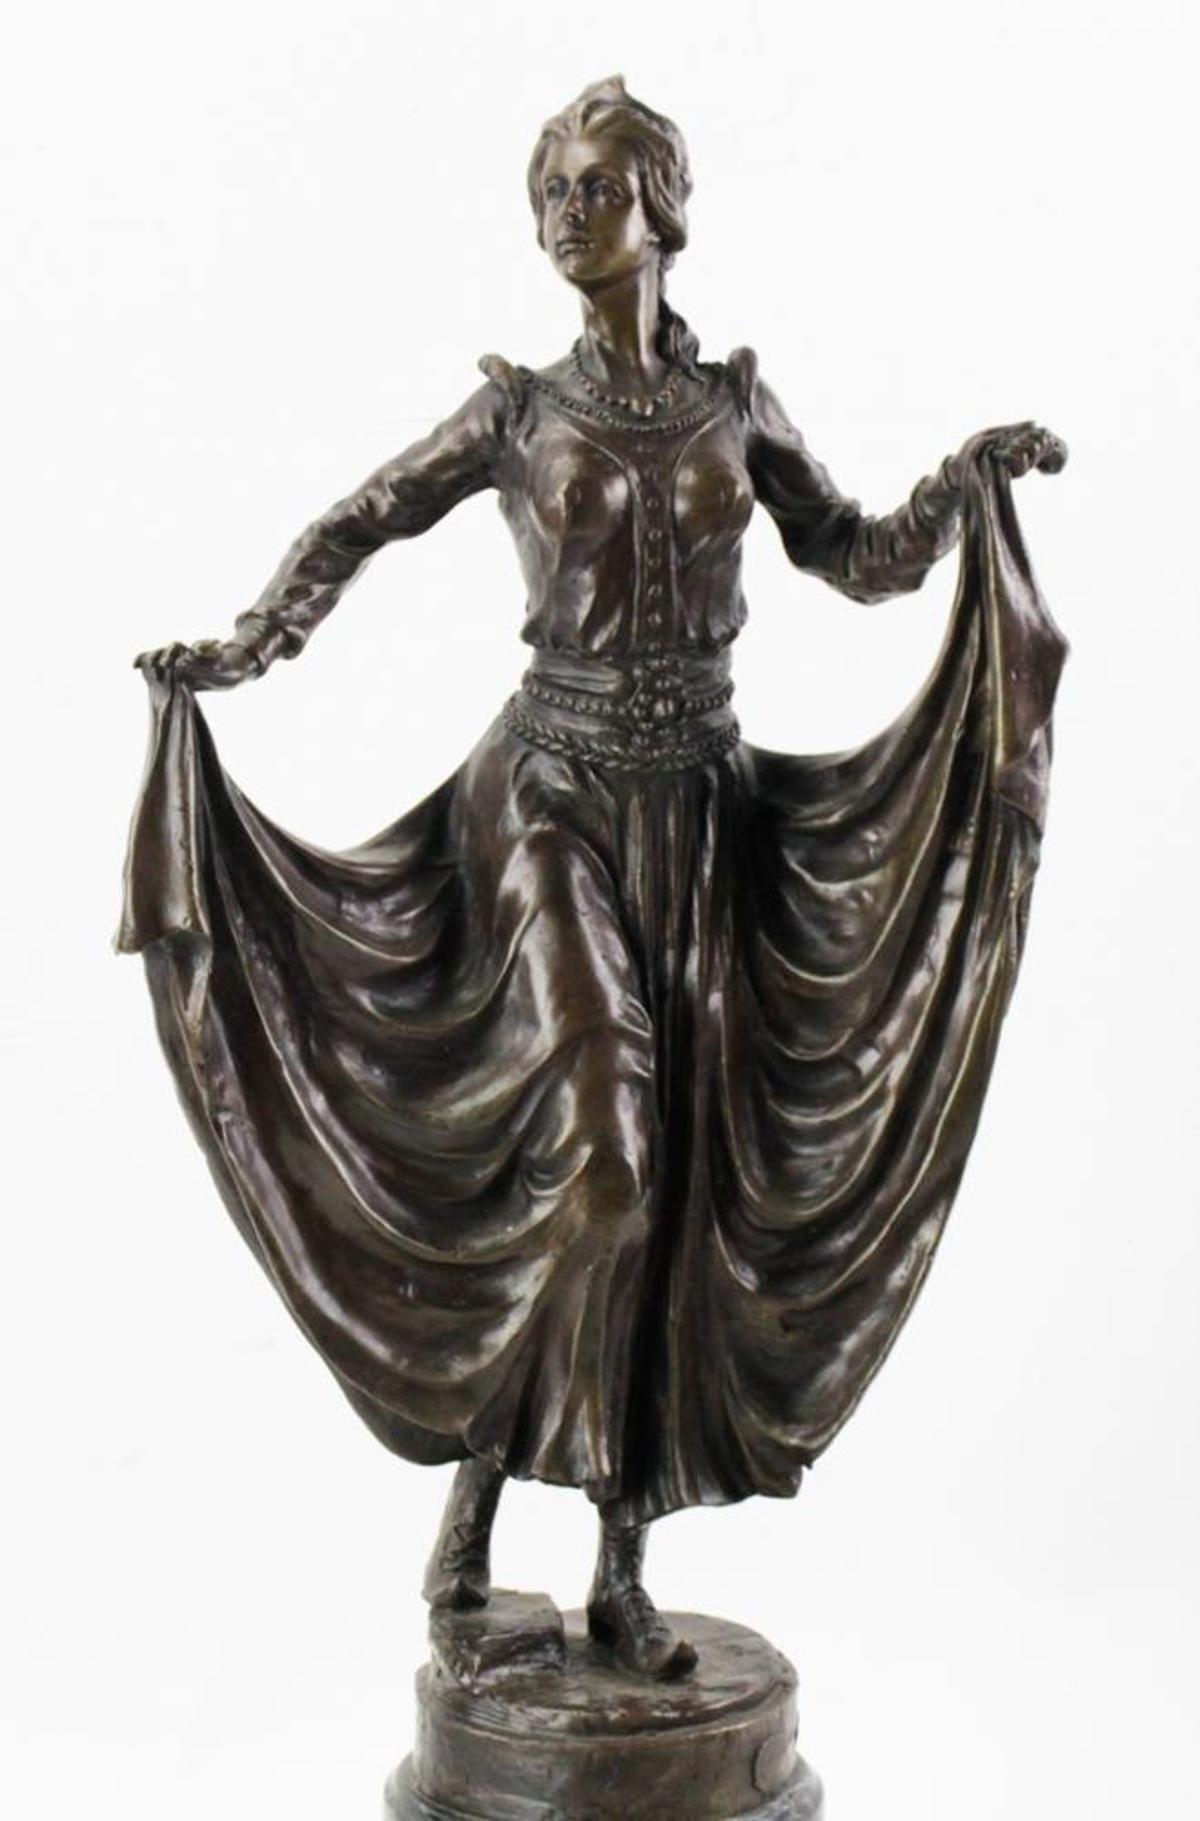 Gracieuse sculpture Art déco représentant une danseuse debout sur une base en marbre noir. Réalisée en bronze de qualité, la statue présente des femmes portant des jupes longues et des chaussures traditionnelles. Fabriqué en France dans les années